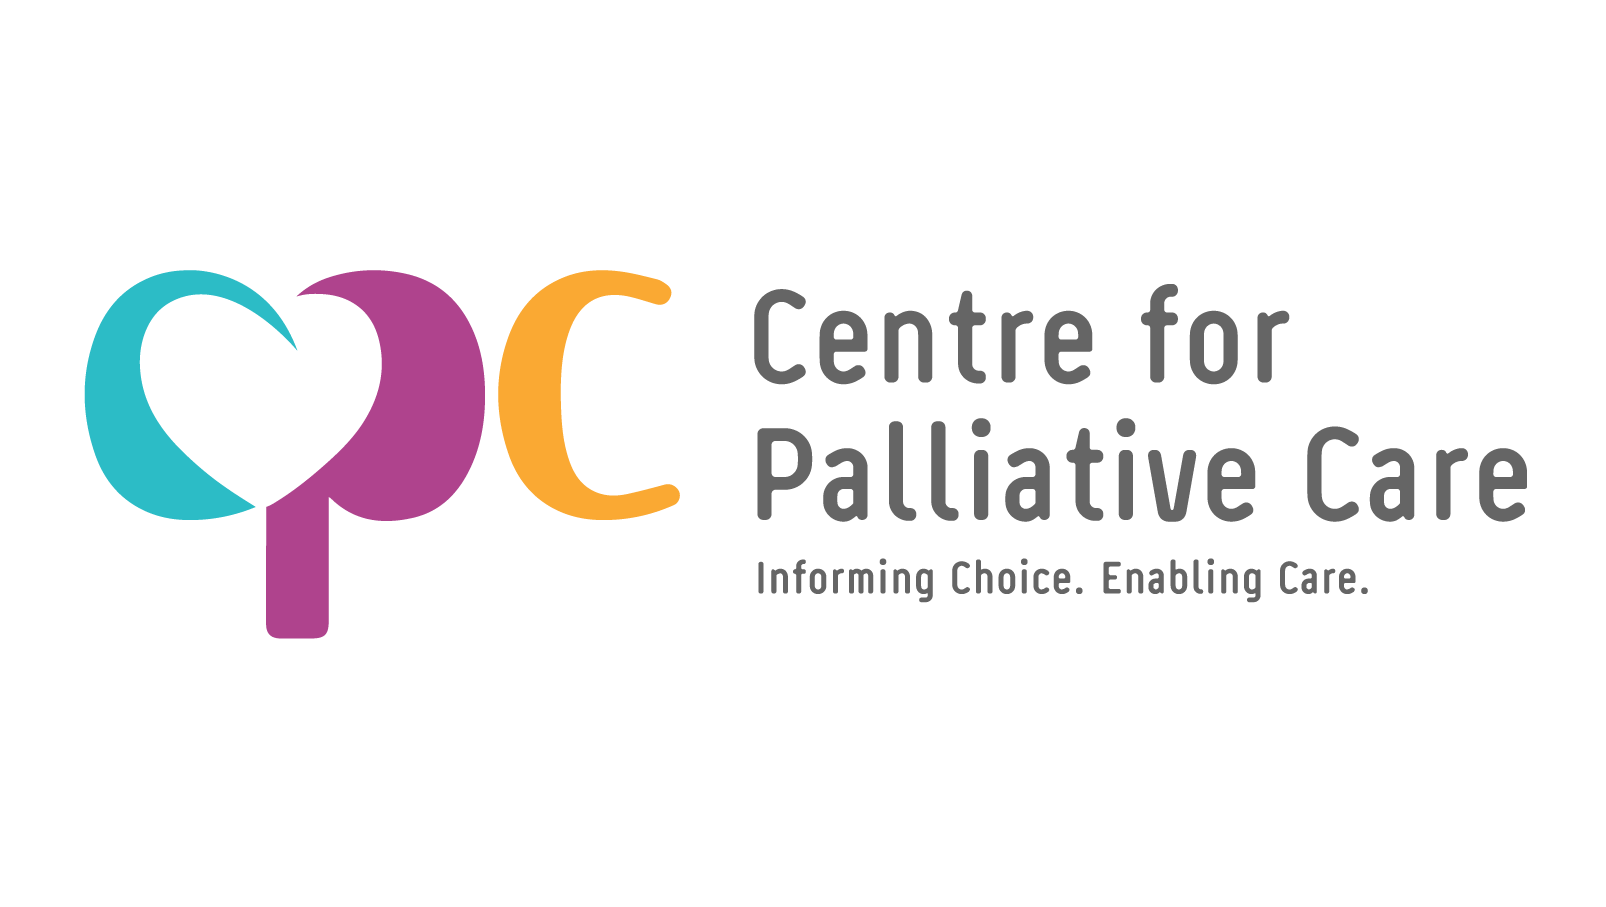 Center for Palliative Care